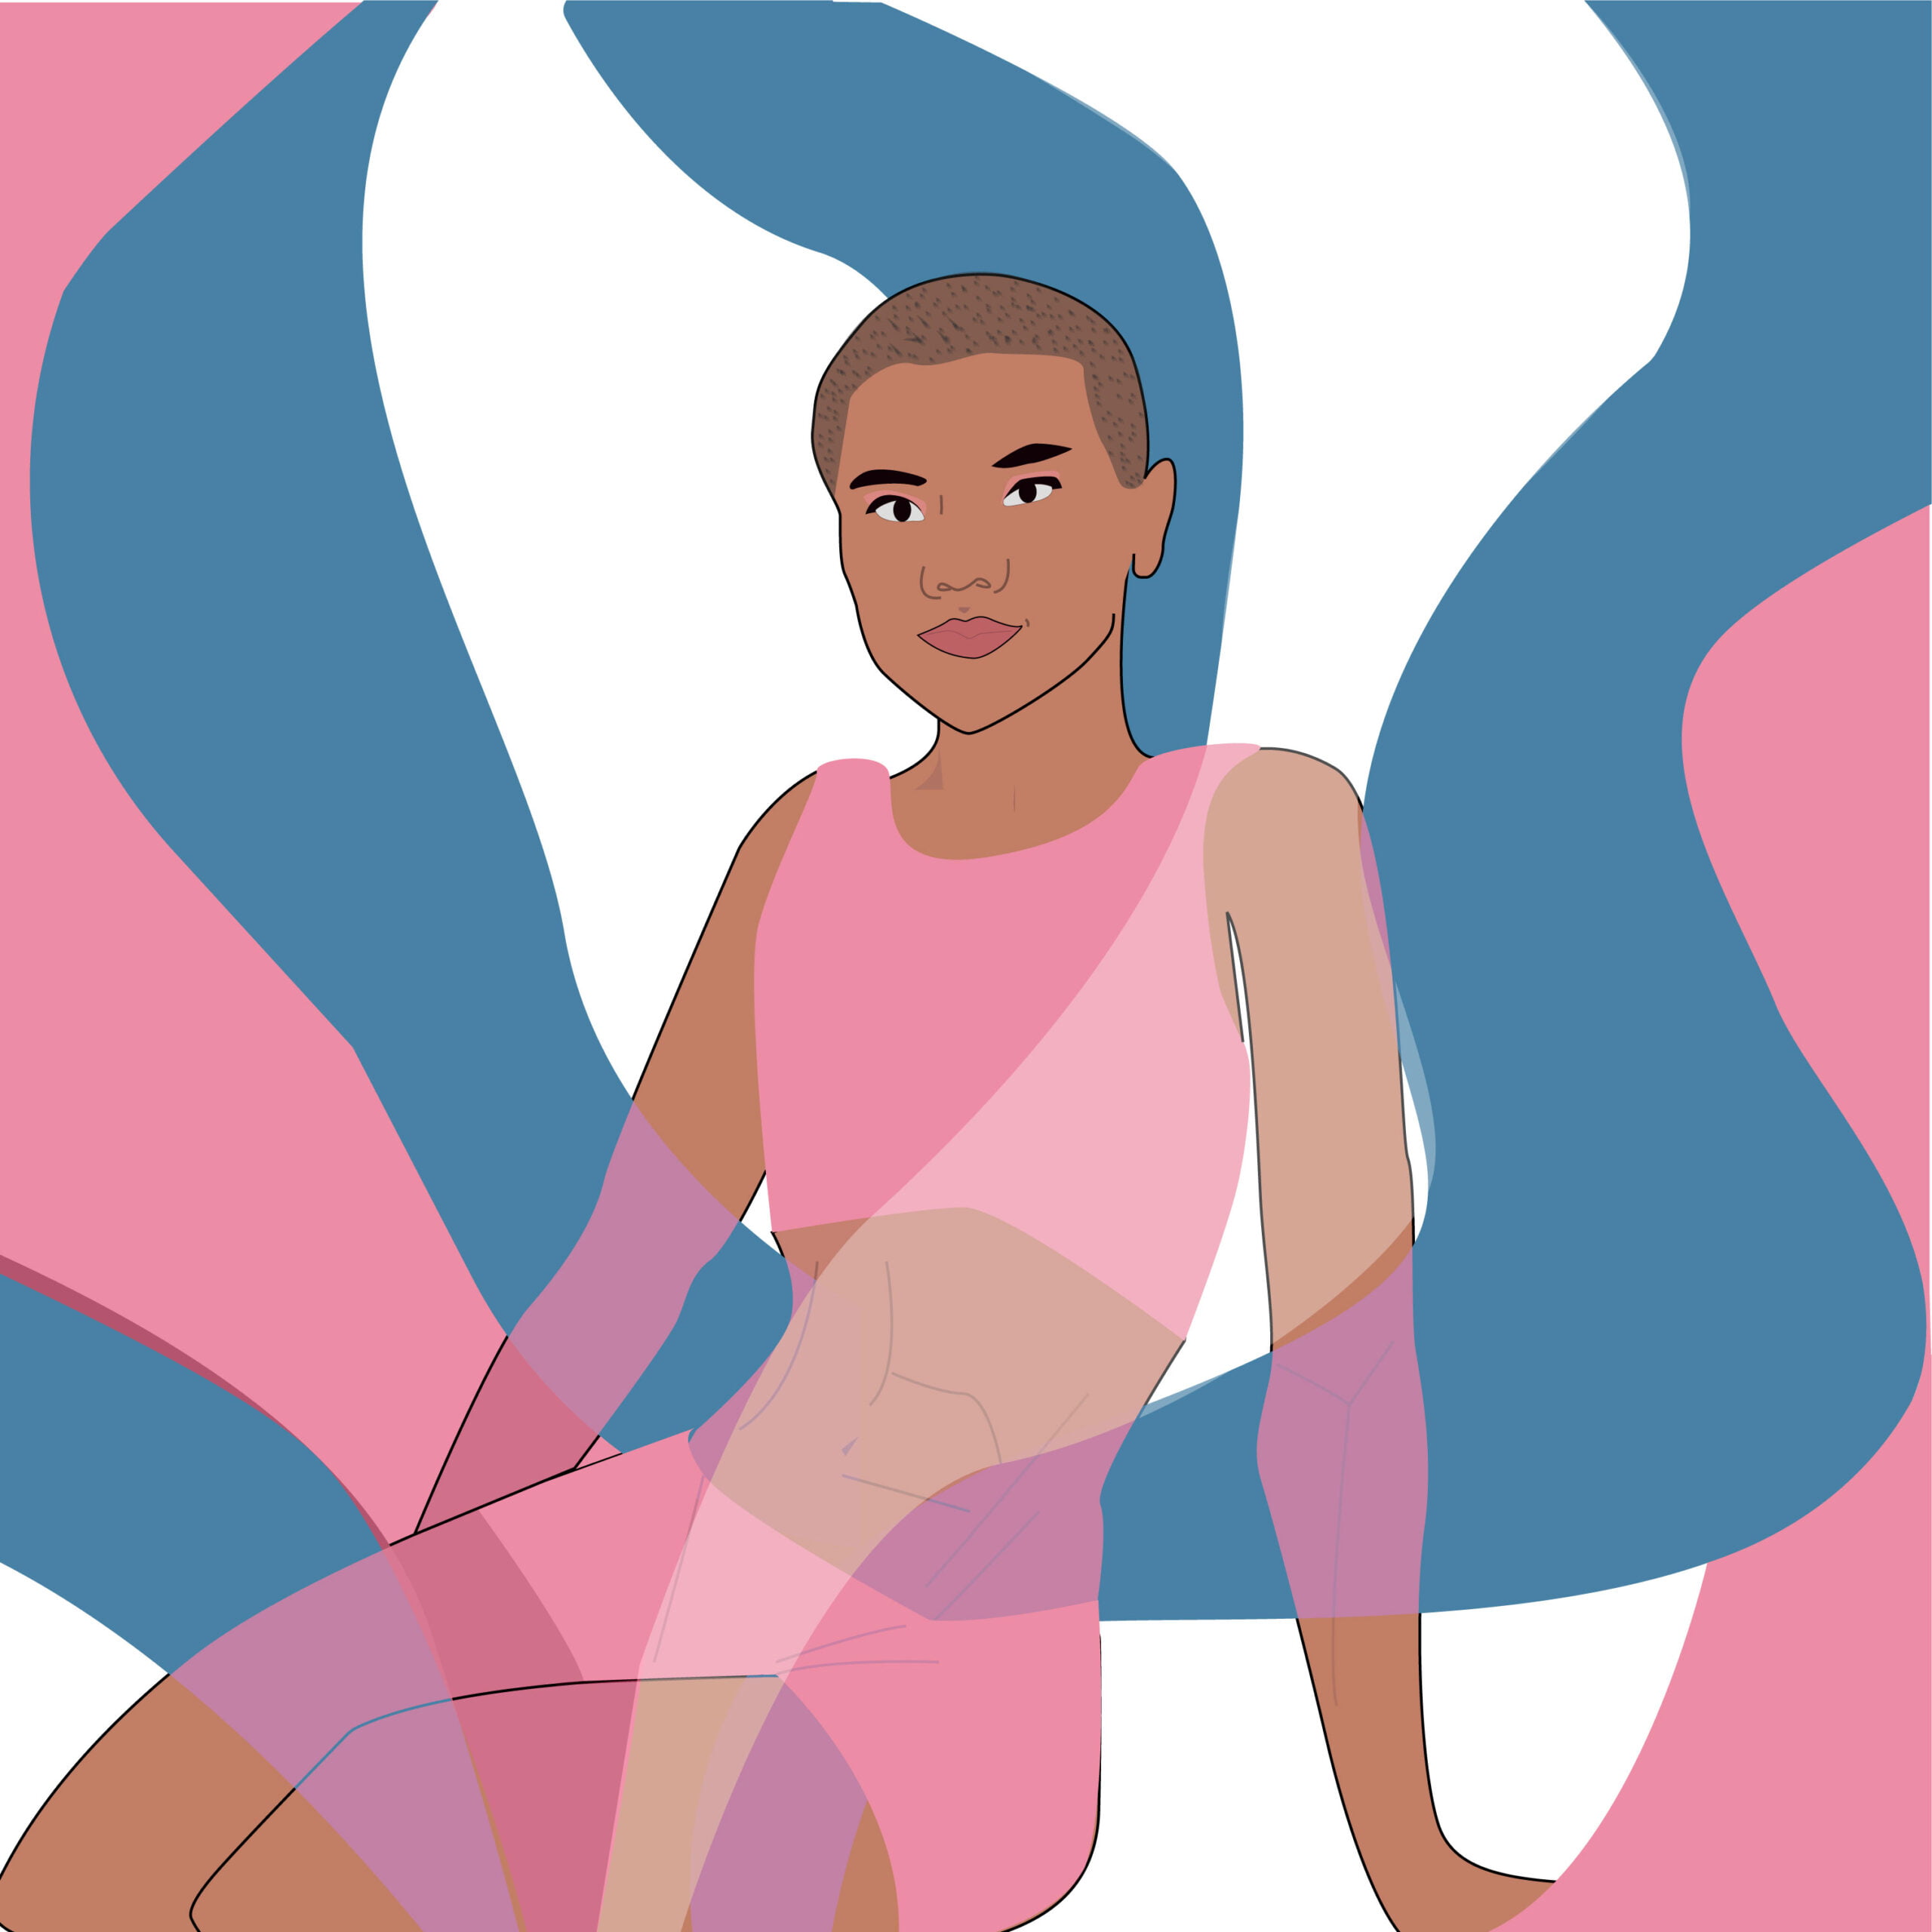 Transgender illustration by Rita Azar for 360 Magazine